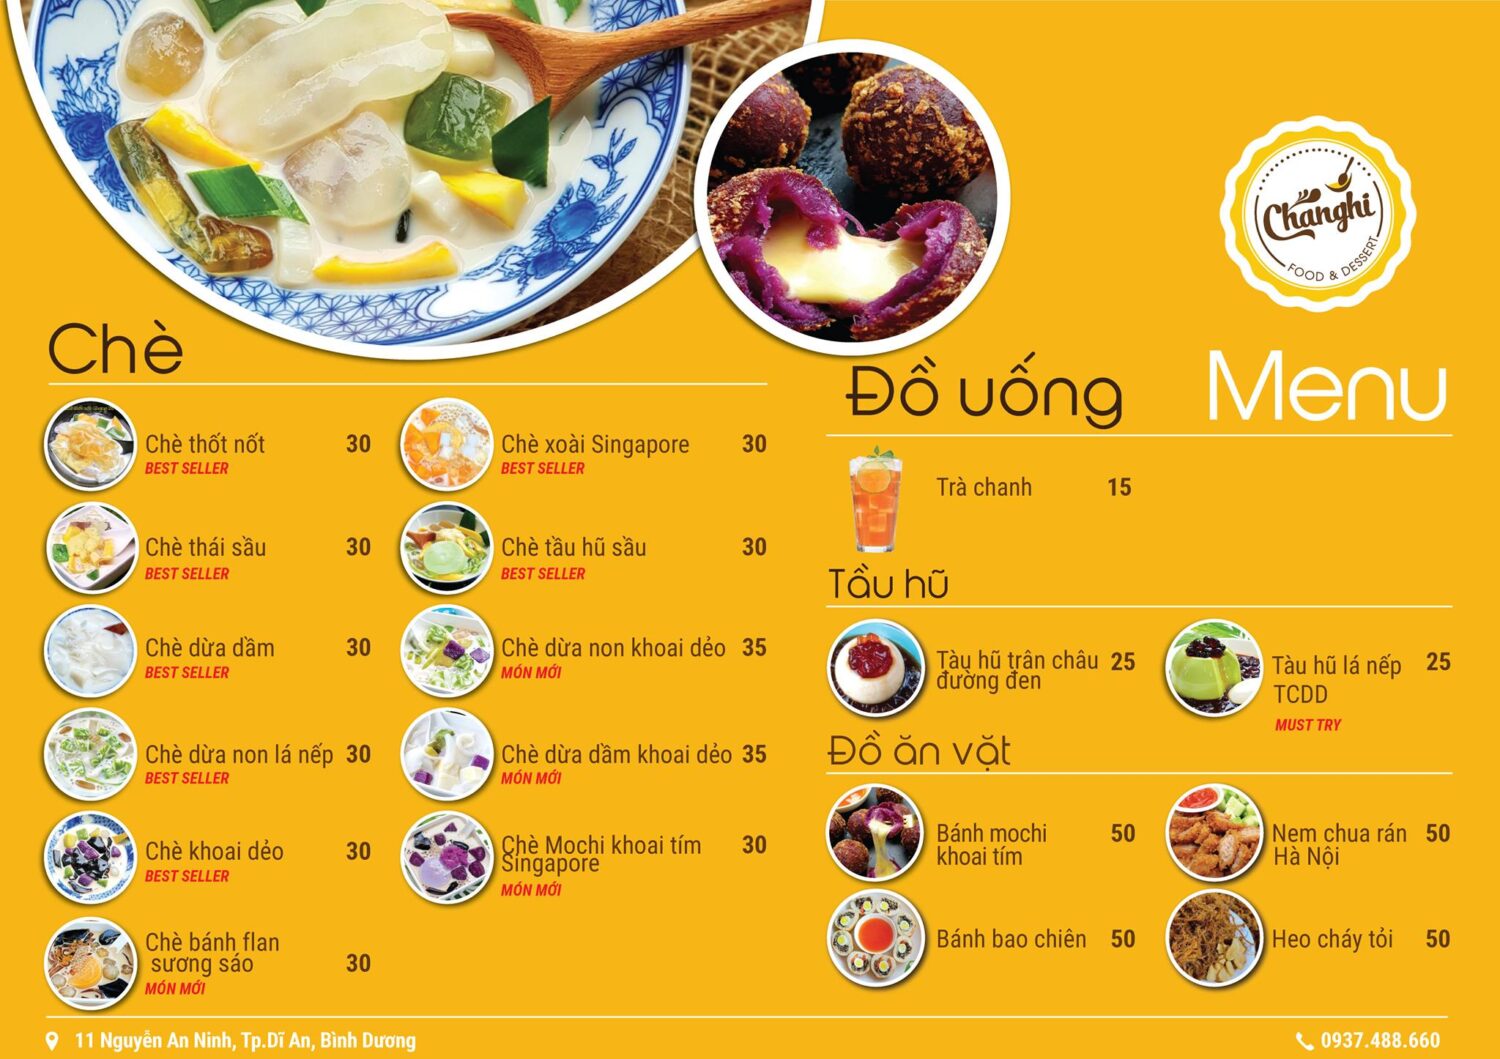 Quán chè Chang Hi menu